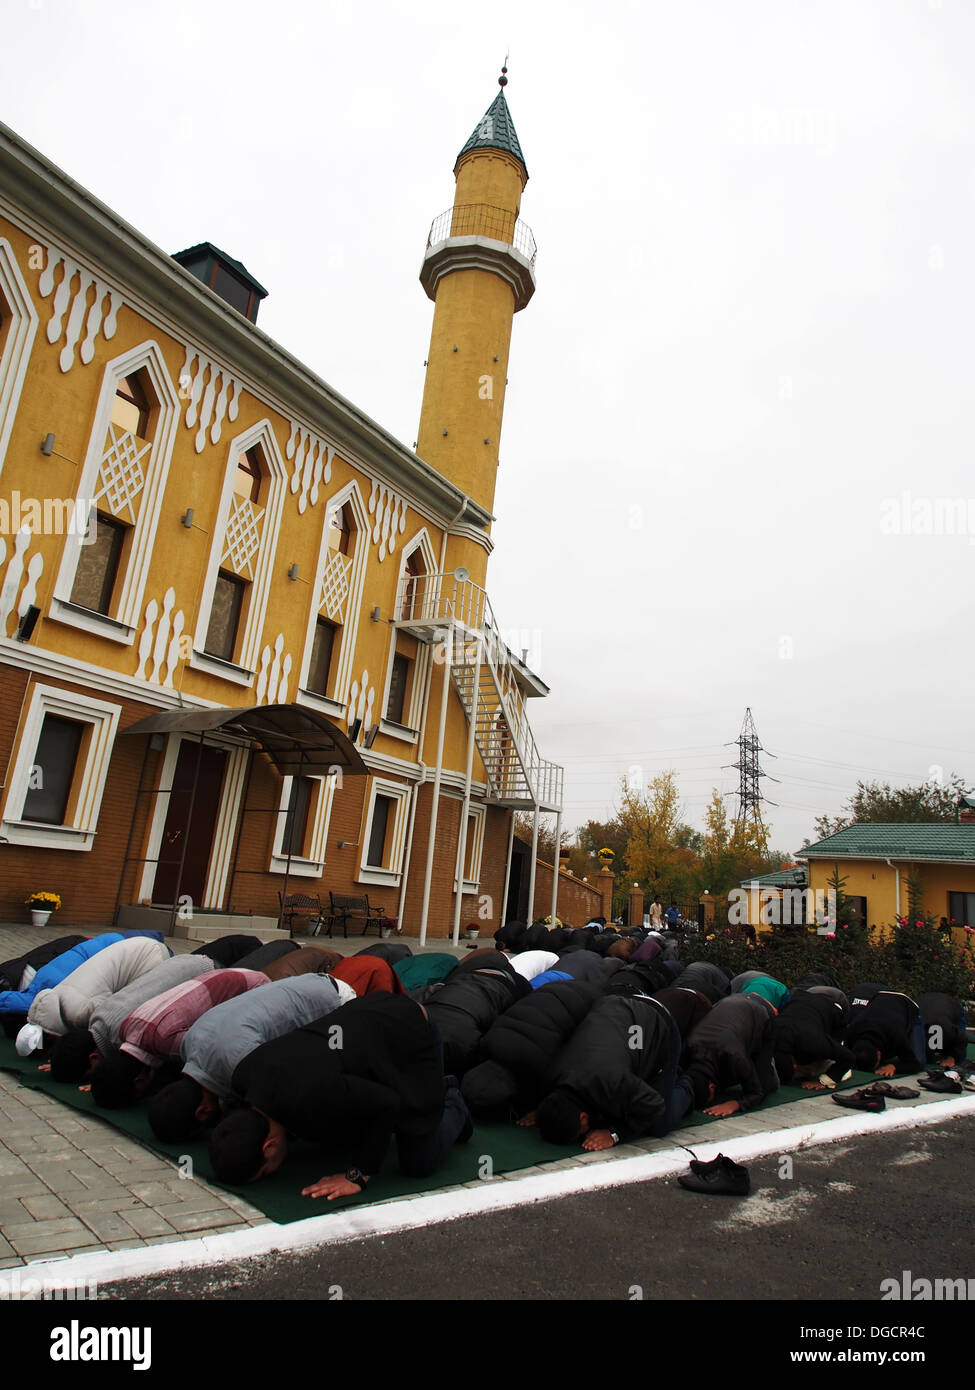 LUGANSK -Ott 15: i musulmani si radunano per celebrare la vacanza musulmana di Eid al-Adha, la Grande Moschea, Lugansk, Ucraina, Ottobre 15, 2013 Foto Stock